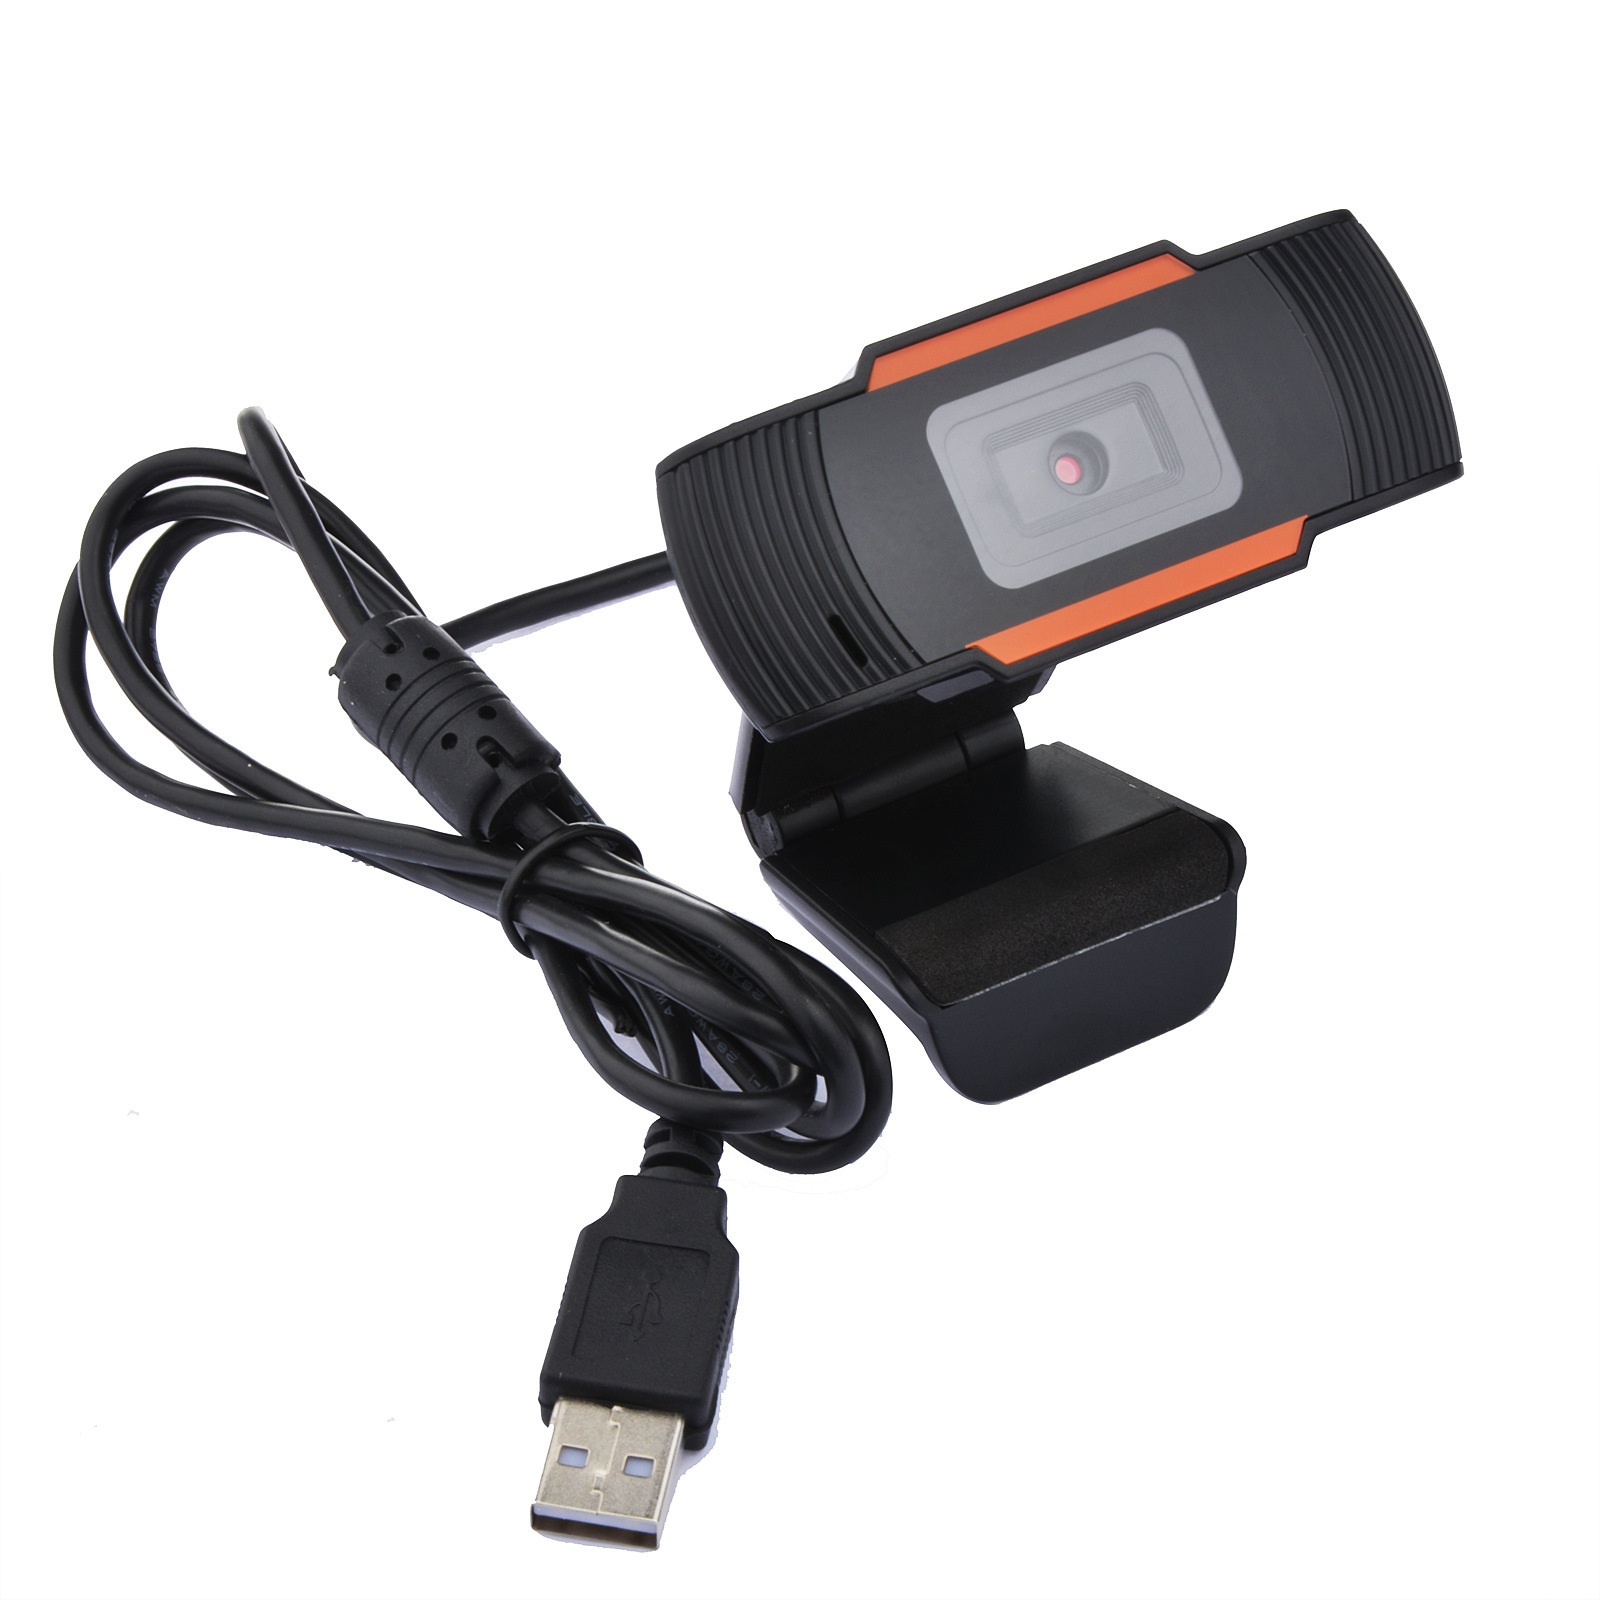 USB 웹캠 HD 1080P 카메라 컴퓨터 PC 비디오 녹화 네트워크 마이크가있는 라이브 웹 카메라 무료 드라이브 스트리밍 와이드 스크린 비디오